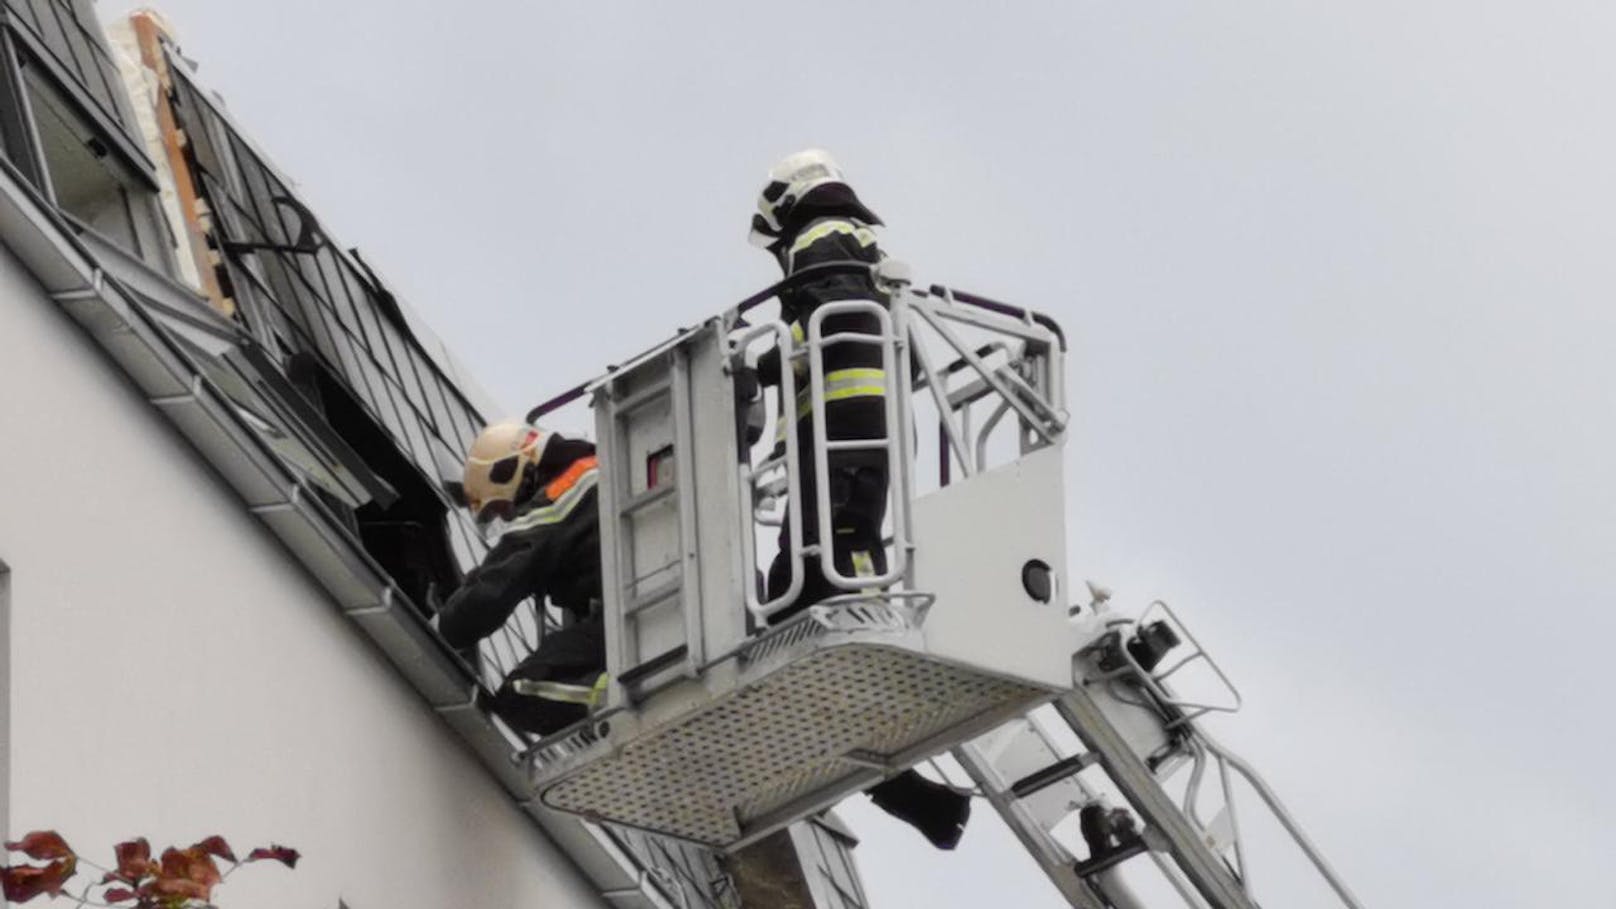 Bei einem Brand in Simmering wurden in der Nacht auf 20. August 2019 acht Personen verletzt.